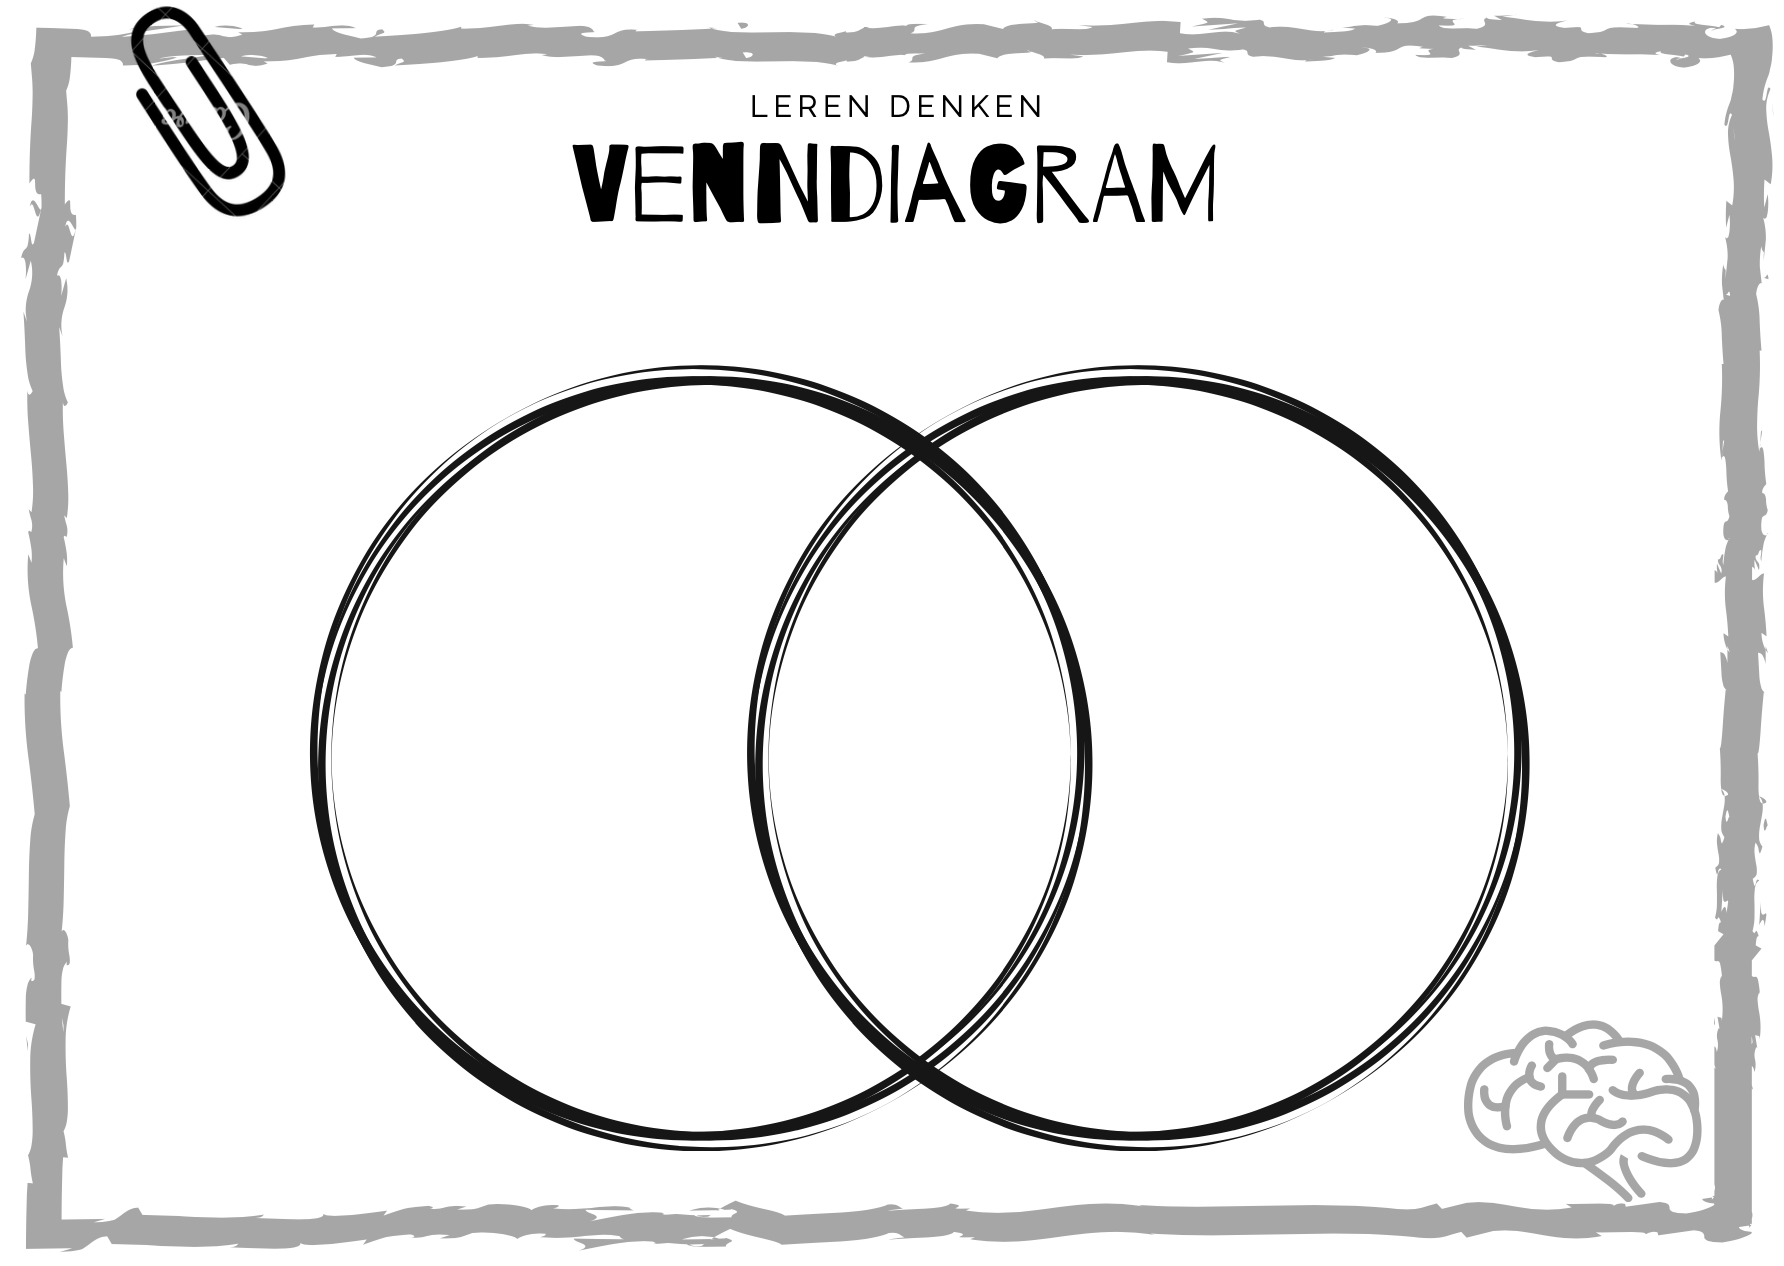 Vendiagram